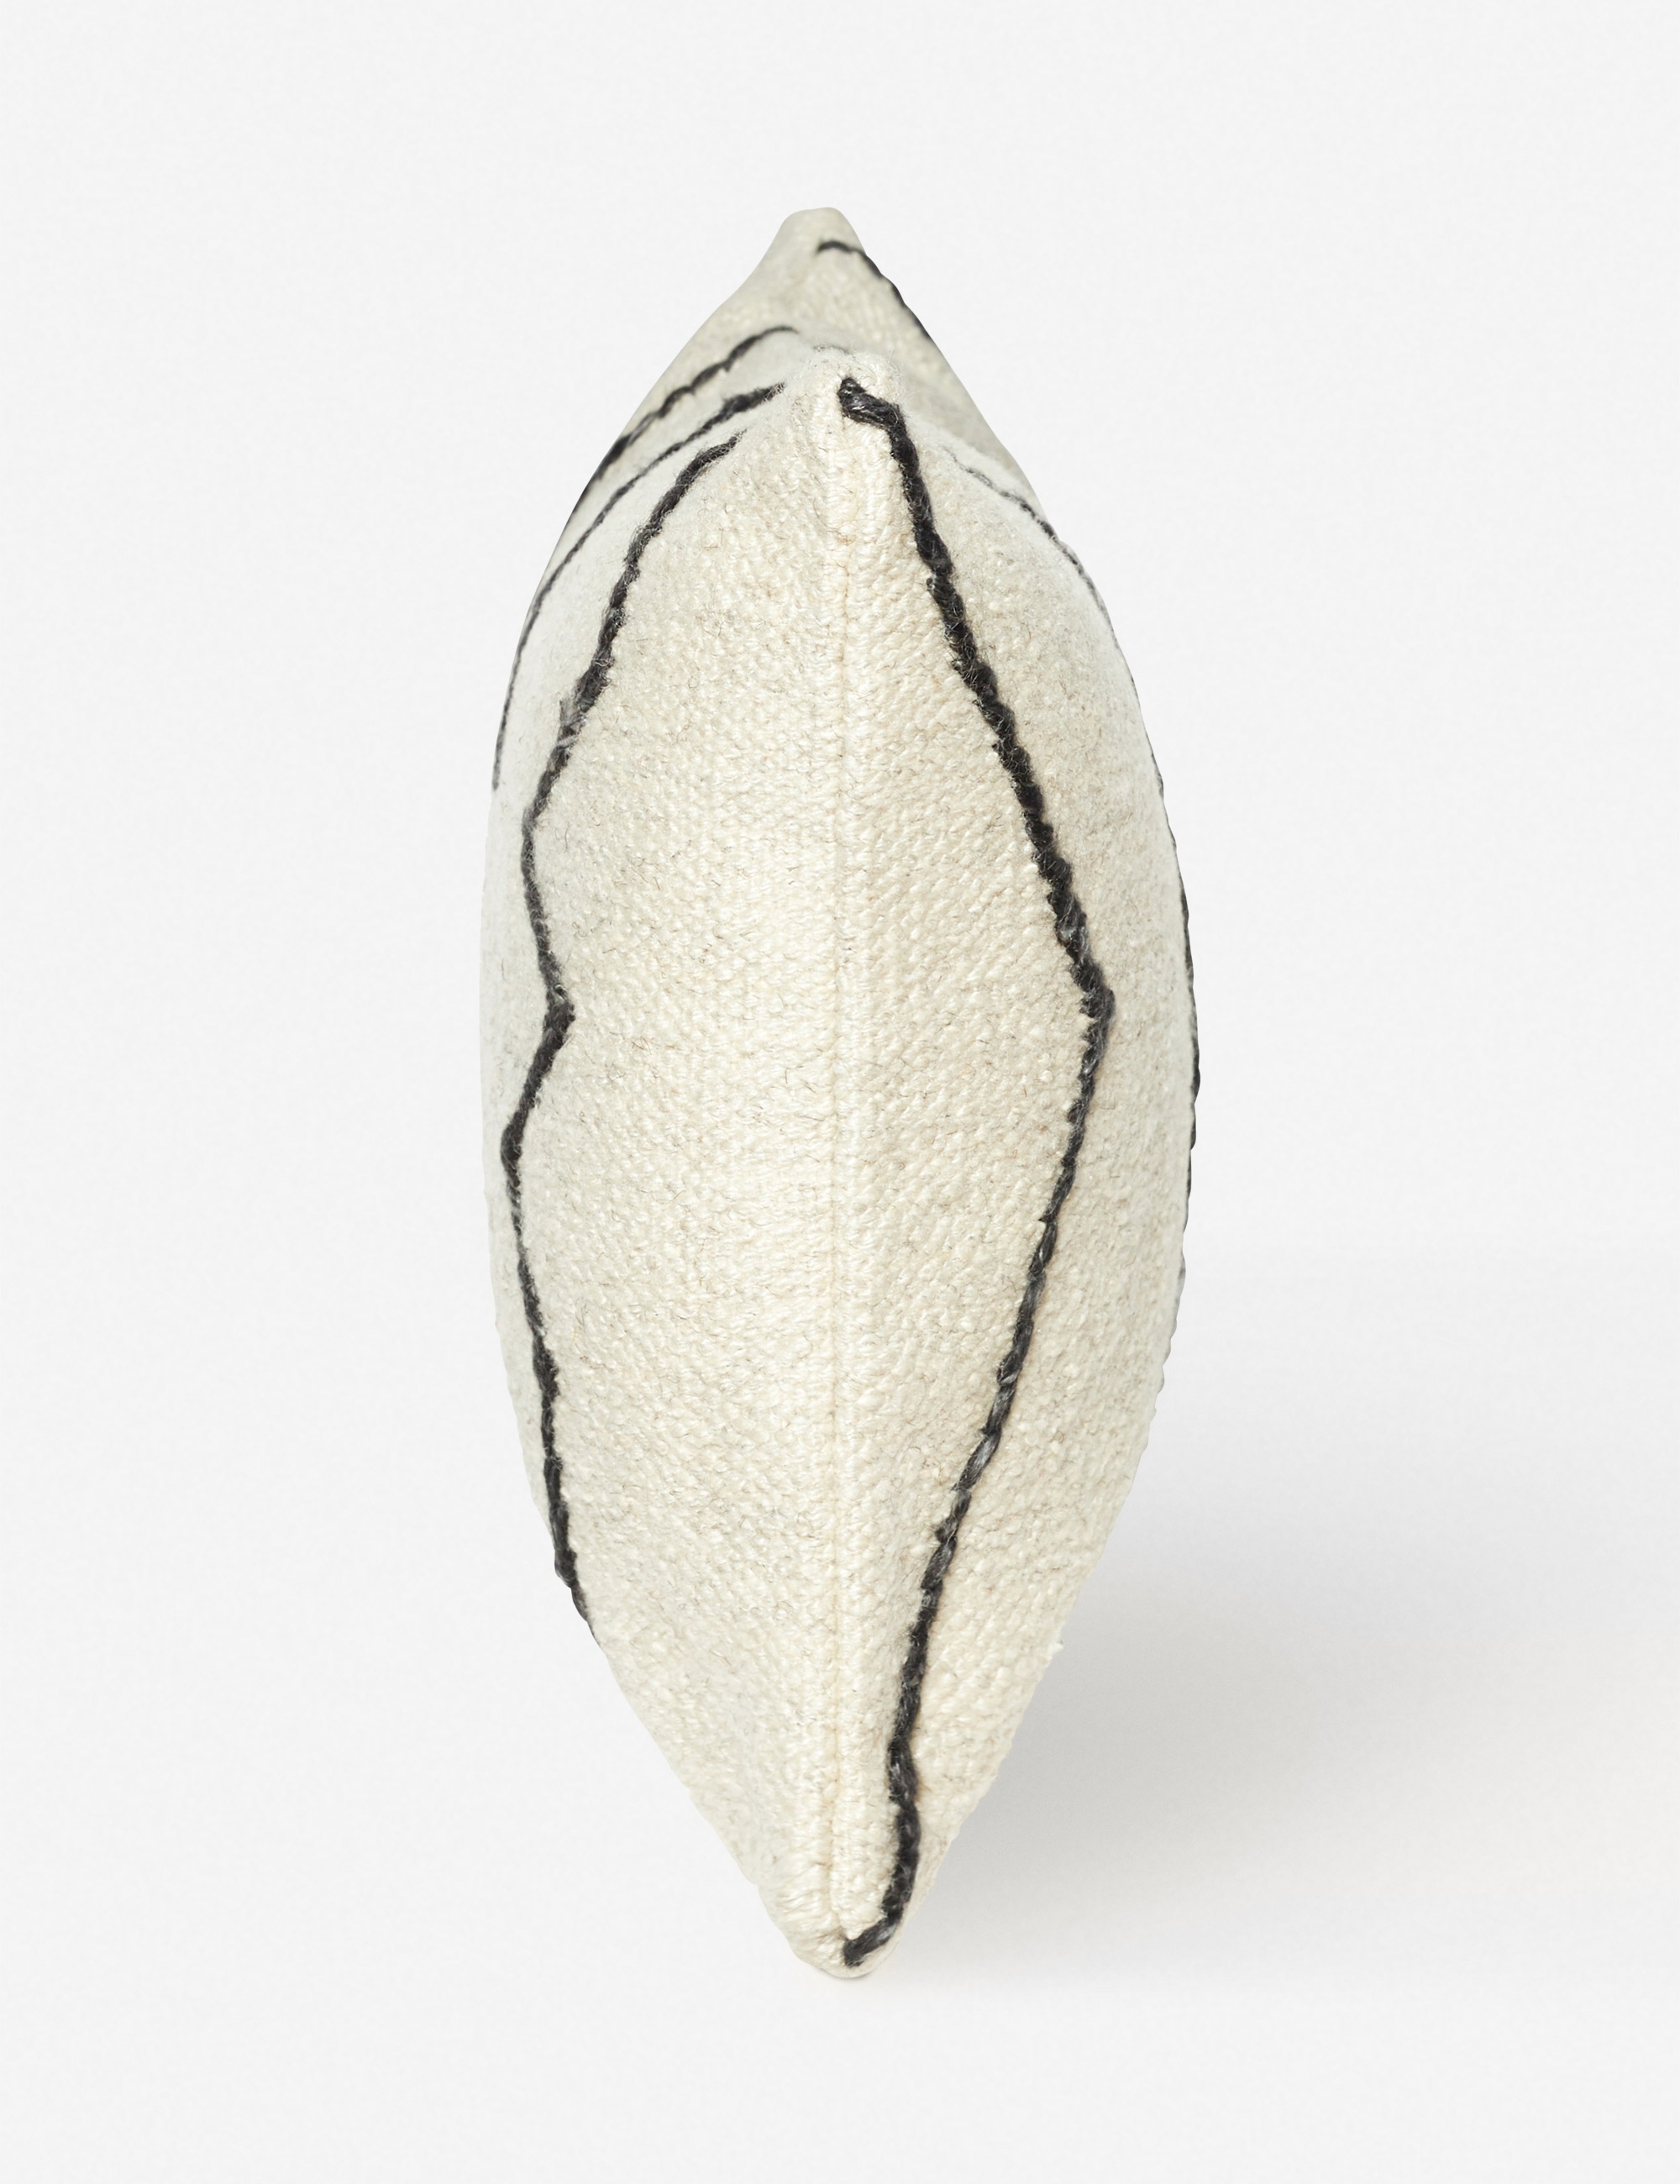 Moroccan Flatweave Lumbar Pillow, Black & Natural By Sarah Sherman Samuel - Image 2